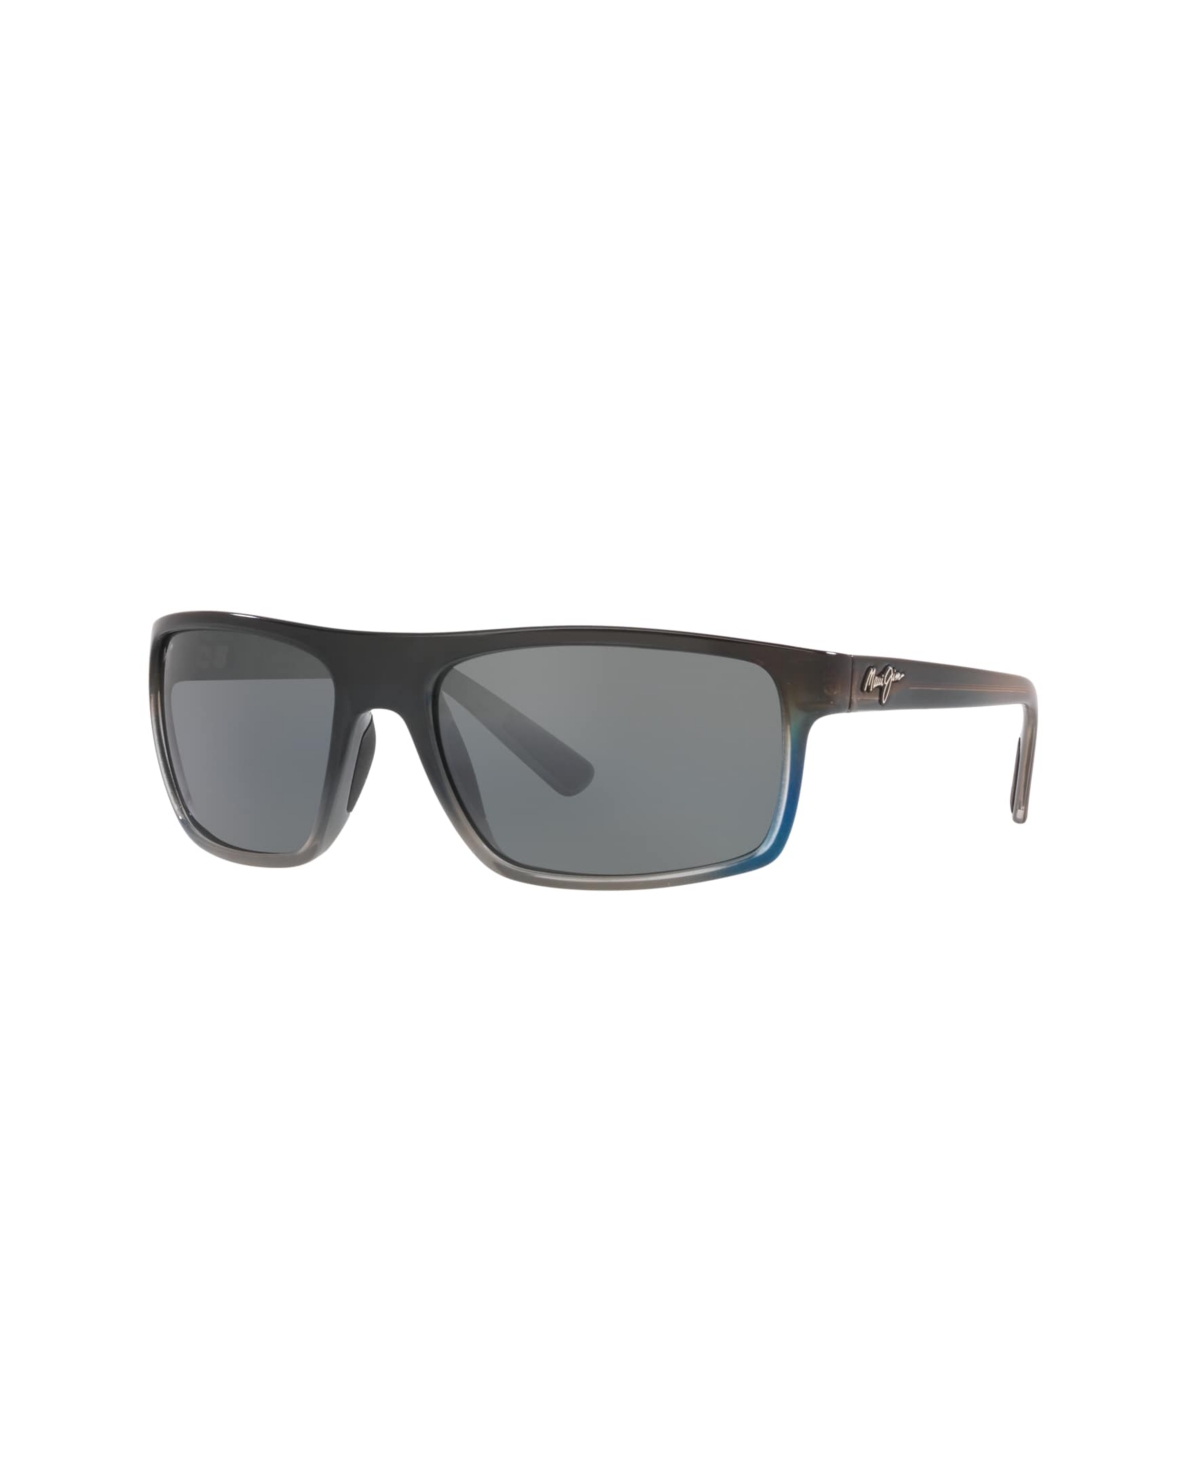 Unisex Polarized Sunglasses, 746 Byron Bay - Tortoise